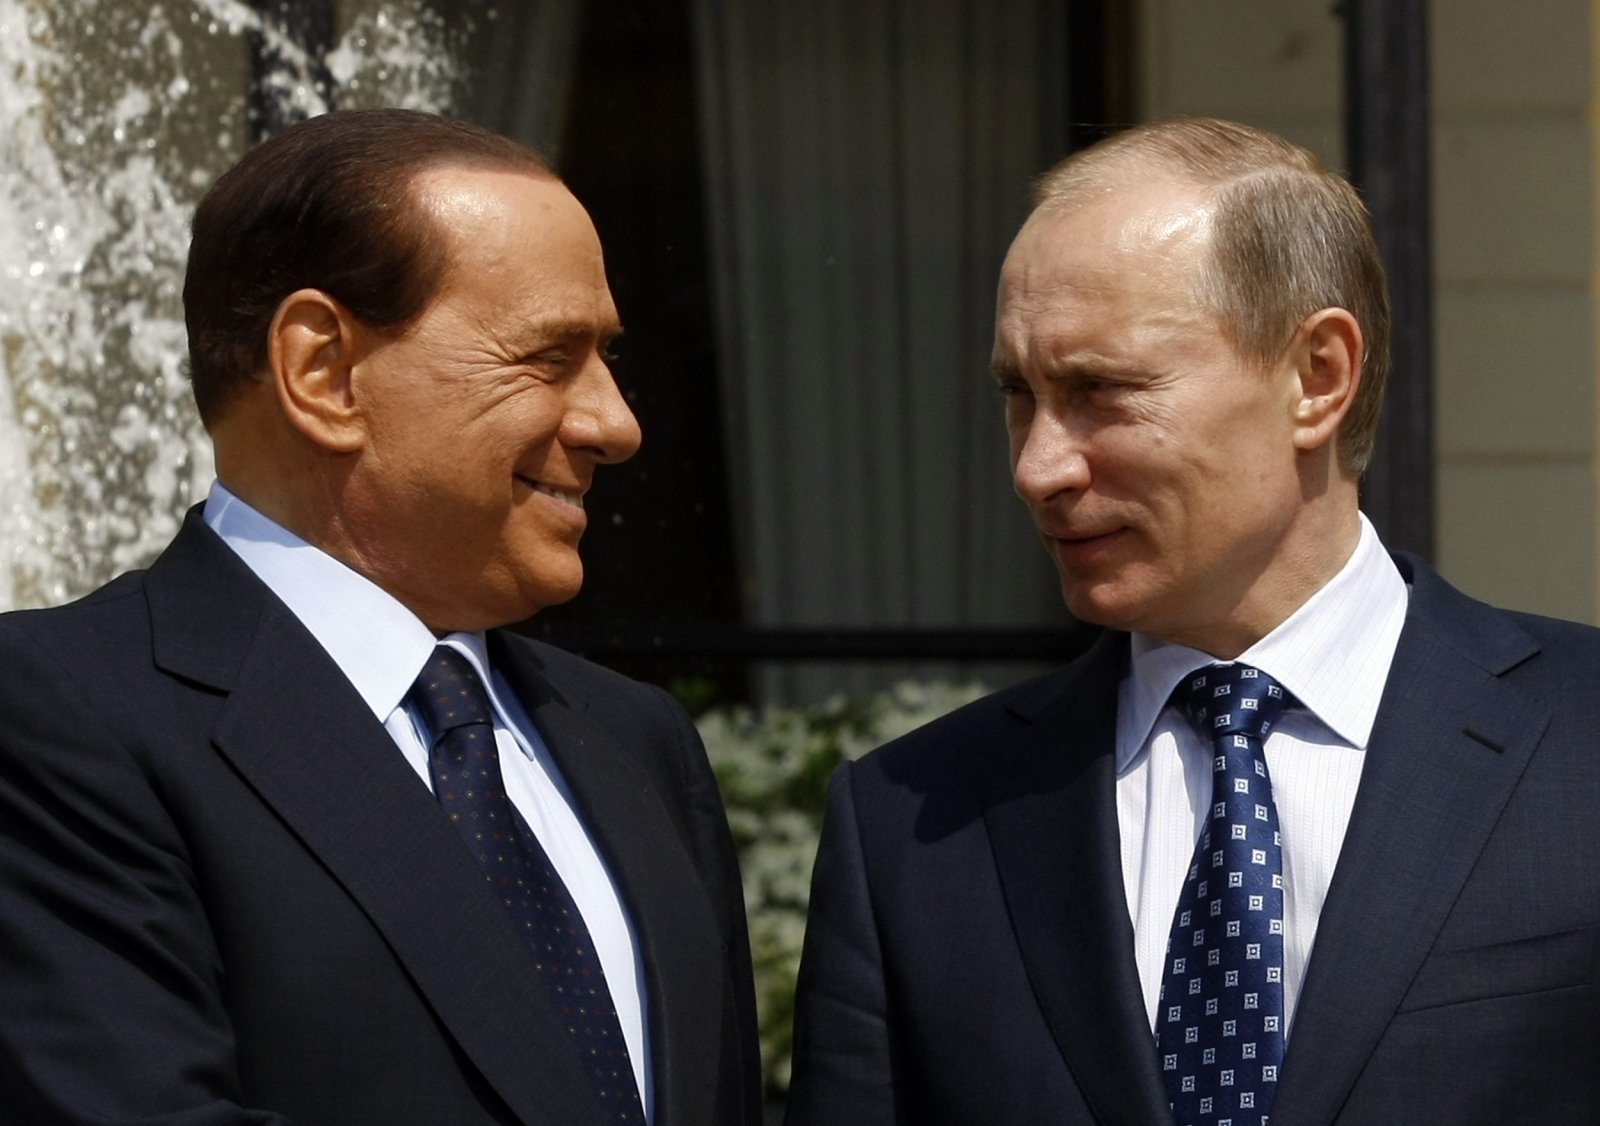 Berlusconi si è vantato di aver ricevuto 20 bottiglie di vodka da Putin per il suo compleanno